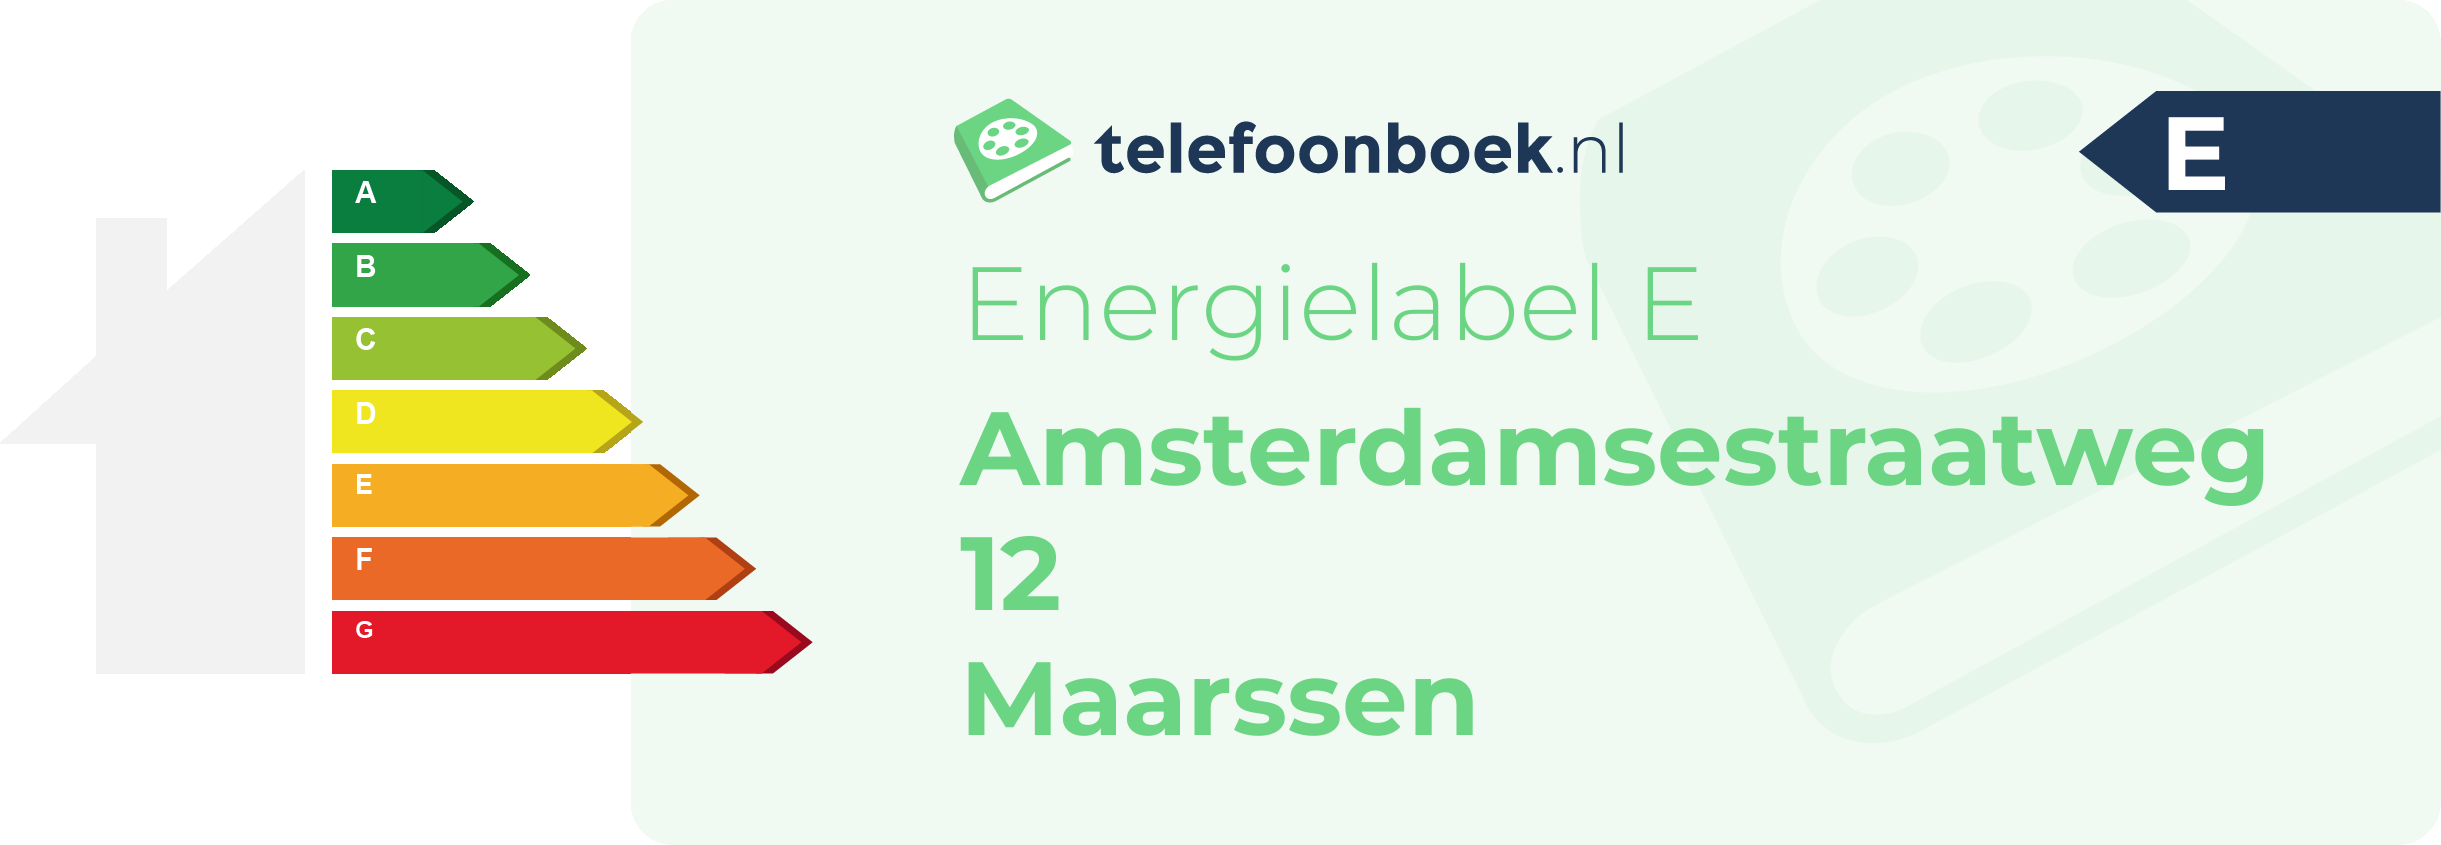 Energielabel Amsterdamsestraatweg 12 Maarssen